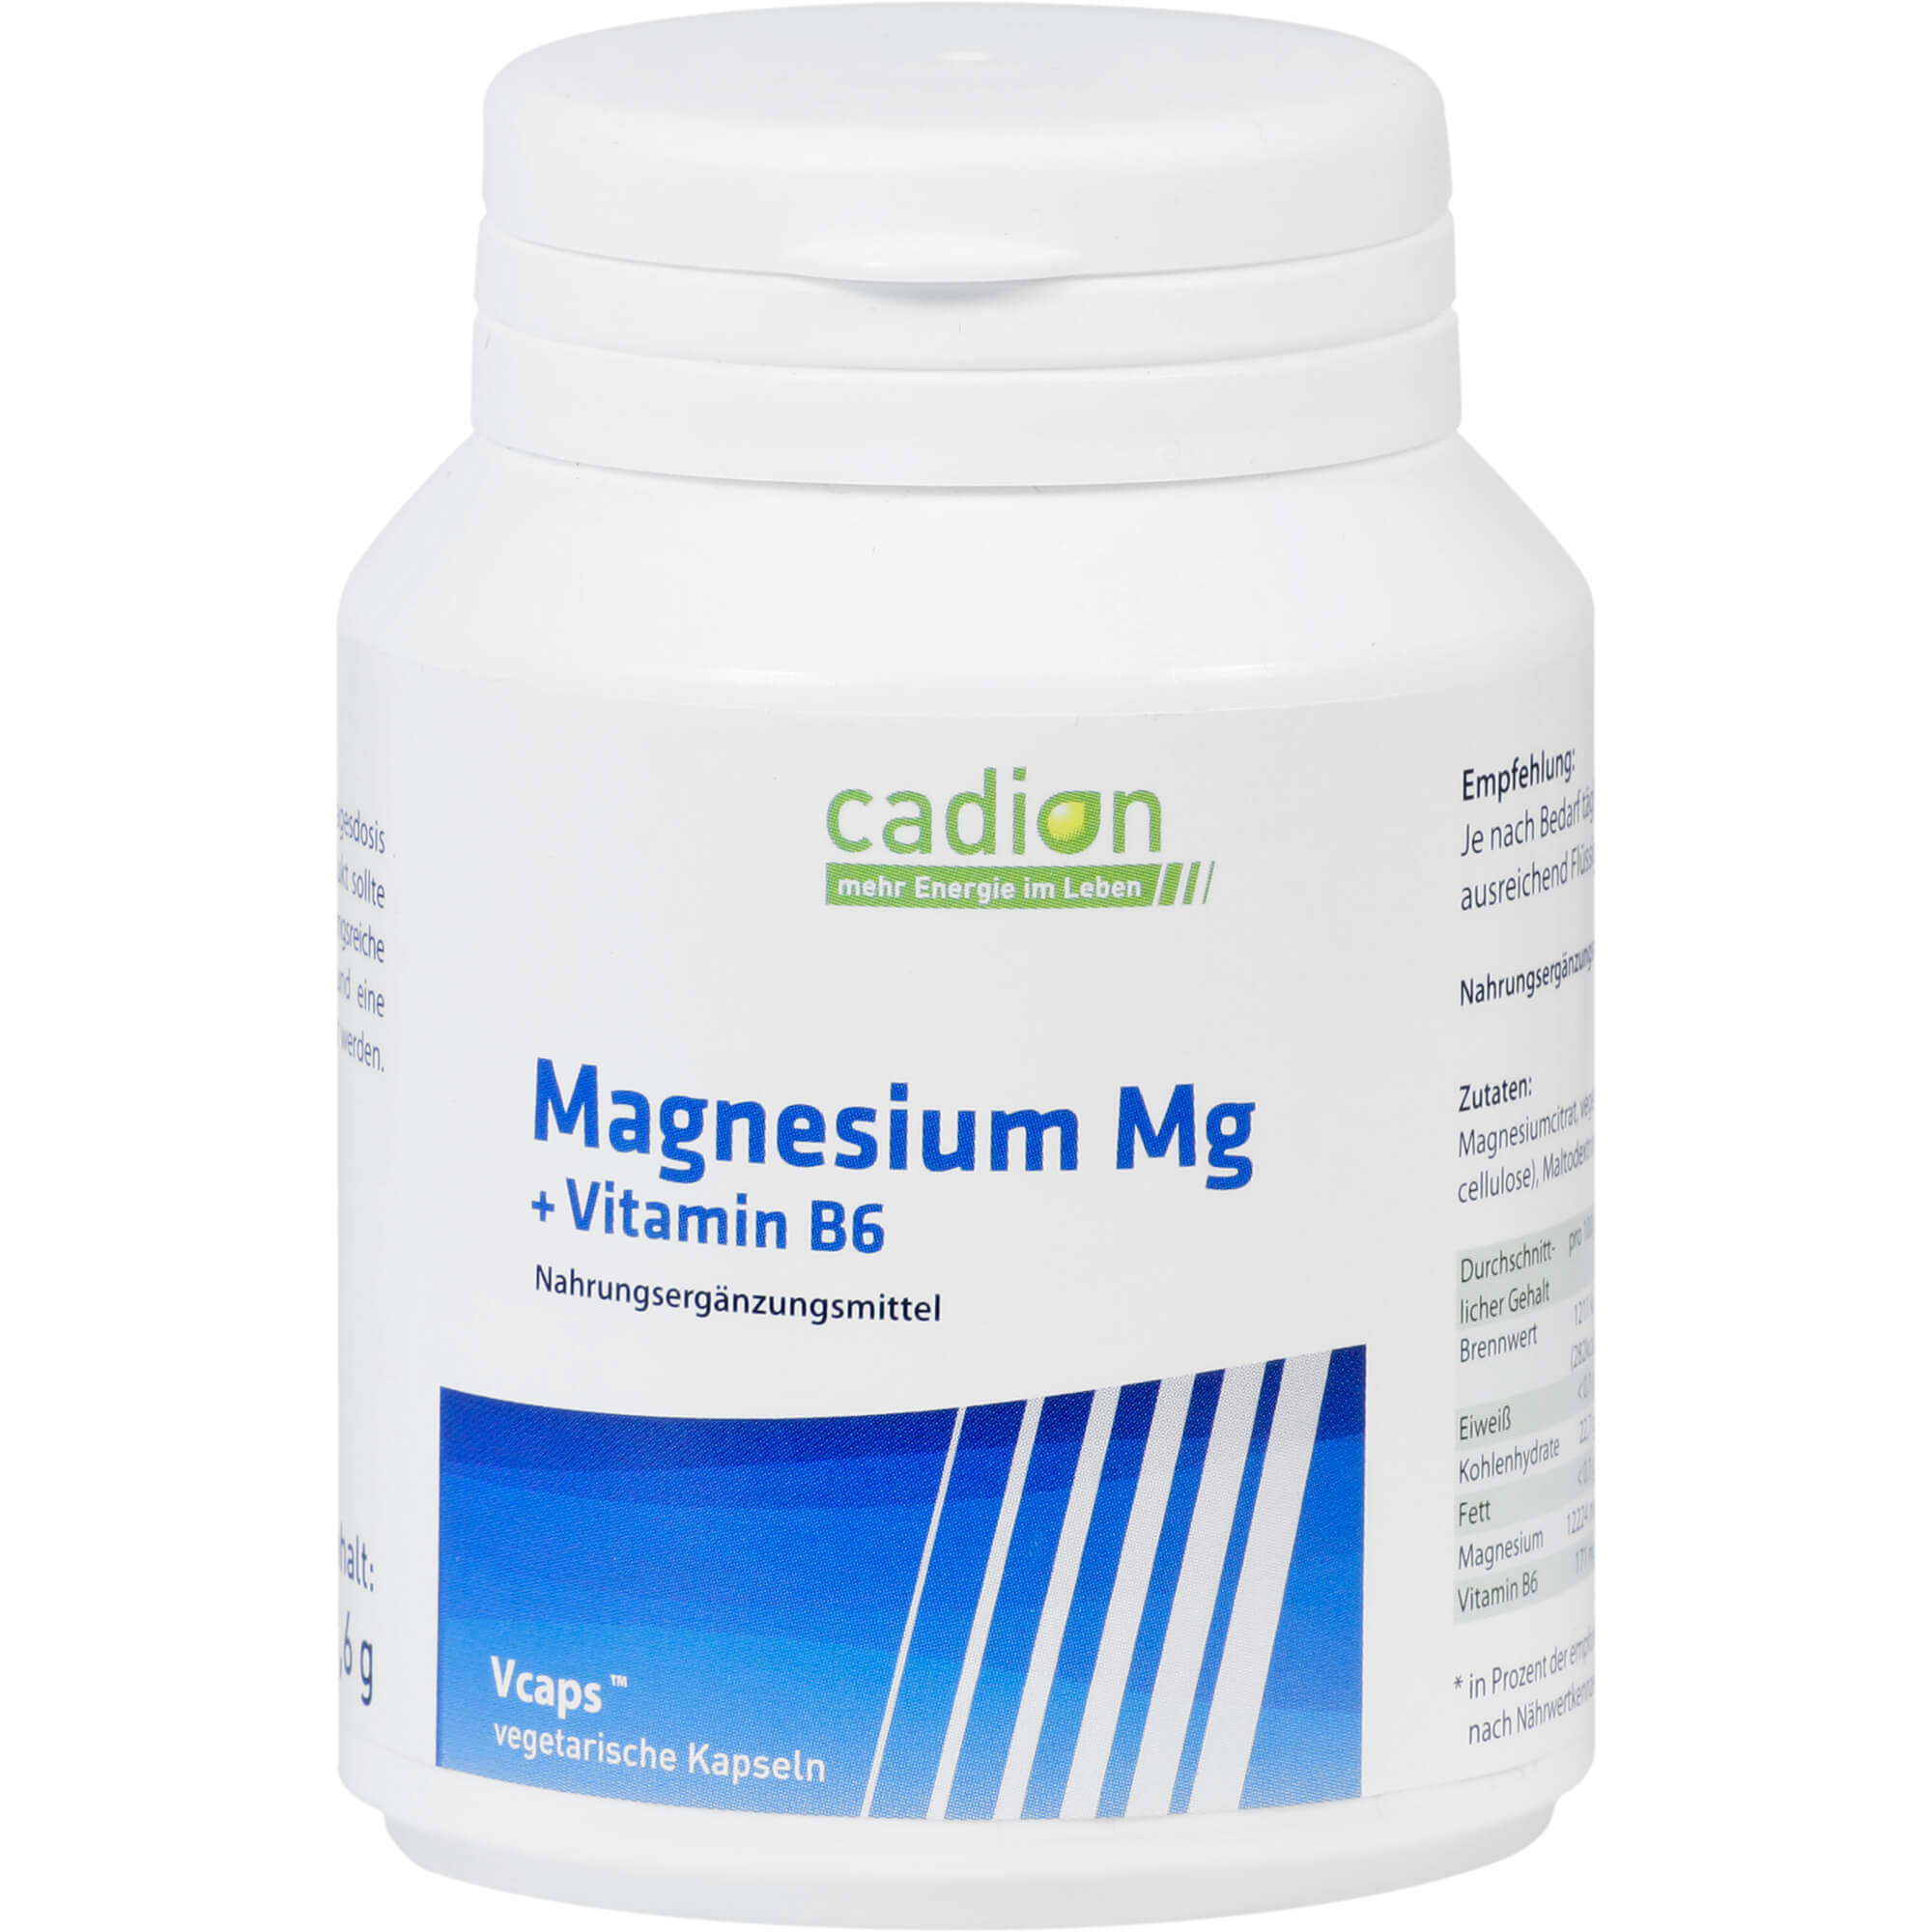 Nahrungsergänzung mit Magnesium und Vitamin B6.